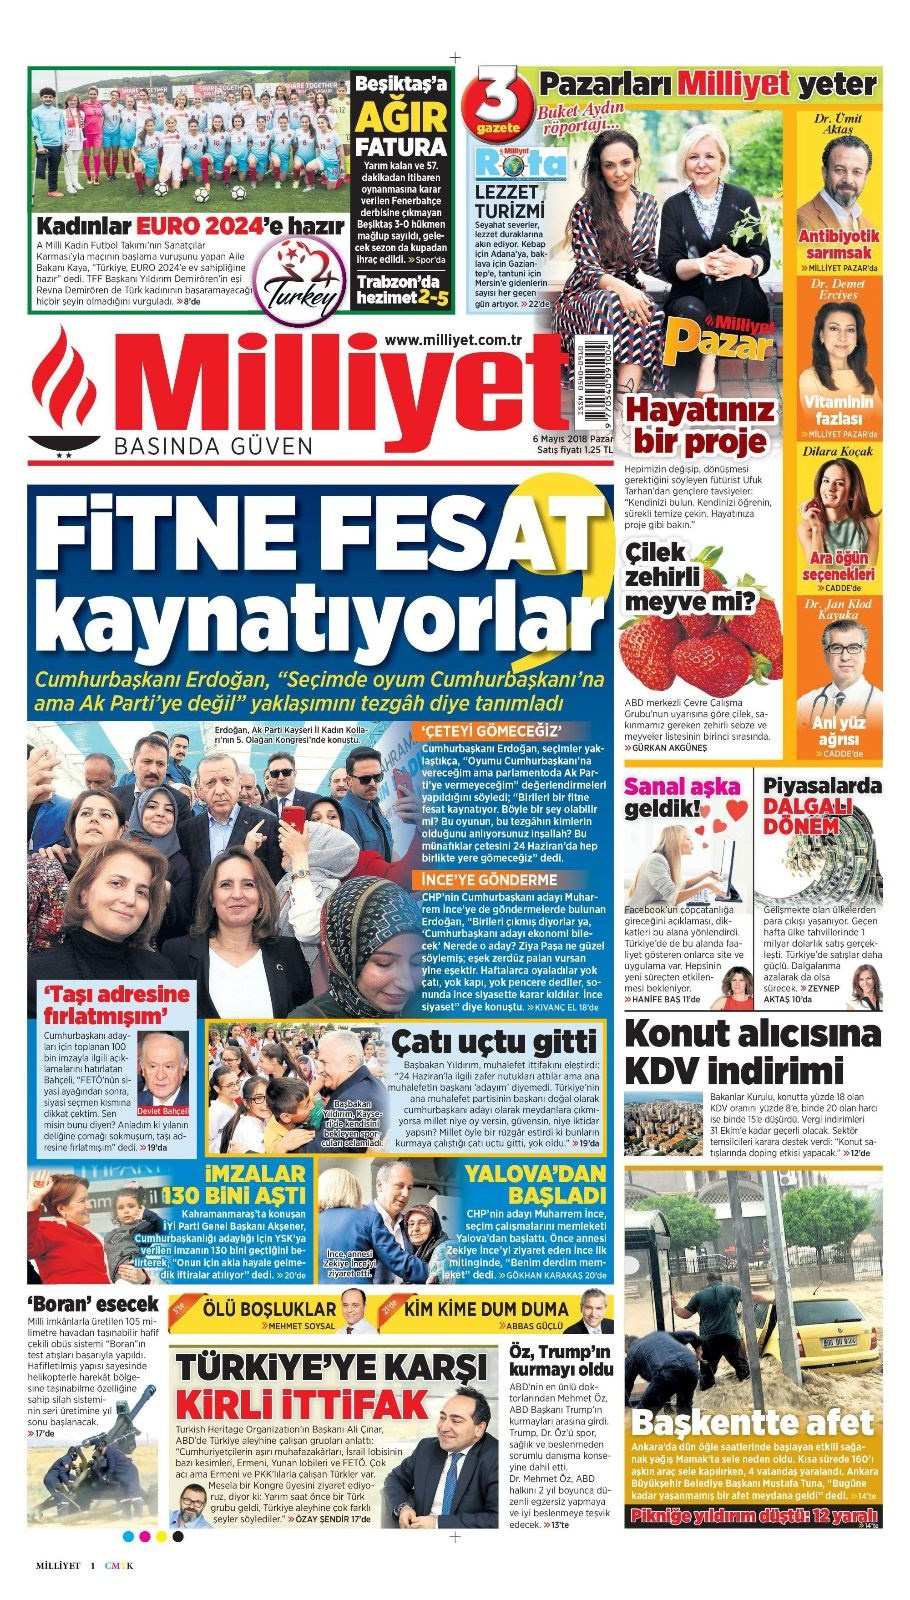 Gazete manşetleri 6 Mayıs 2018 Hürriyet - Sözcü - Fanatik